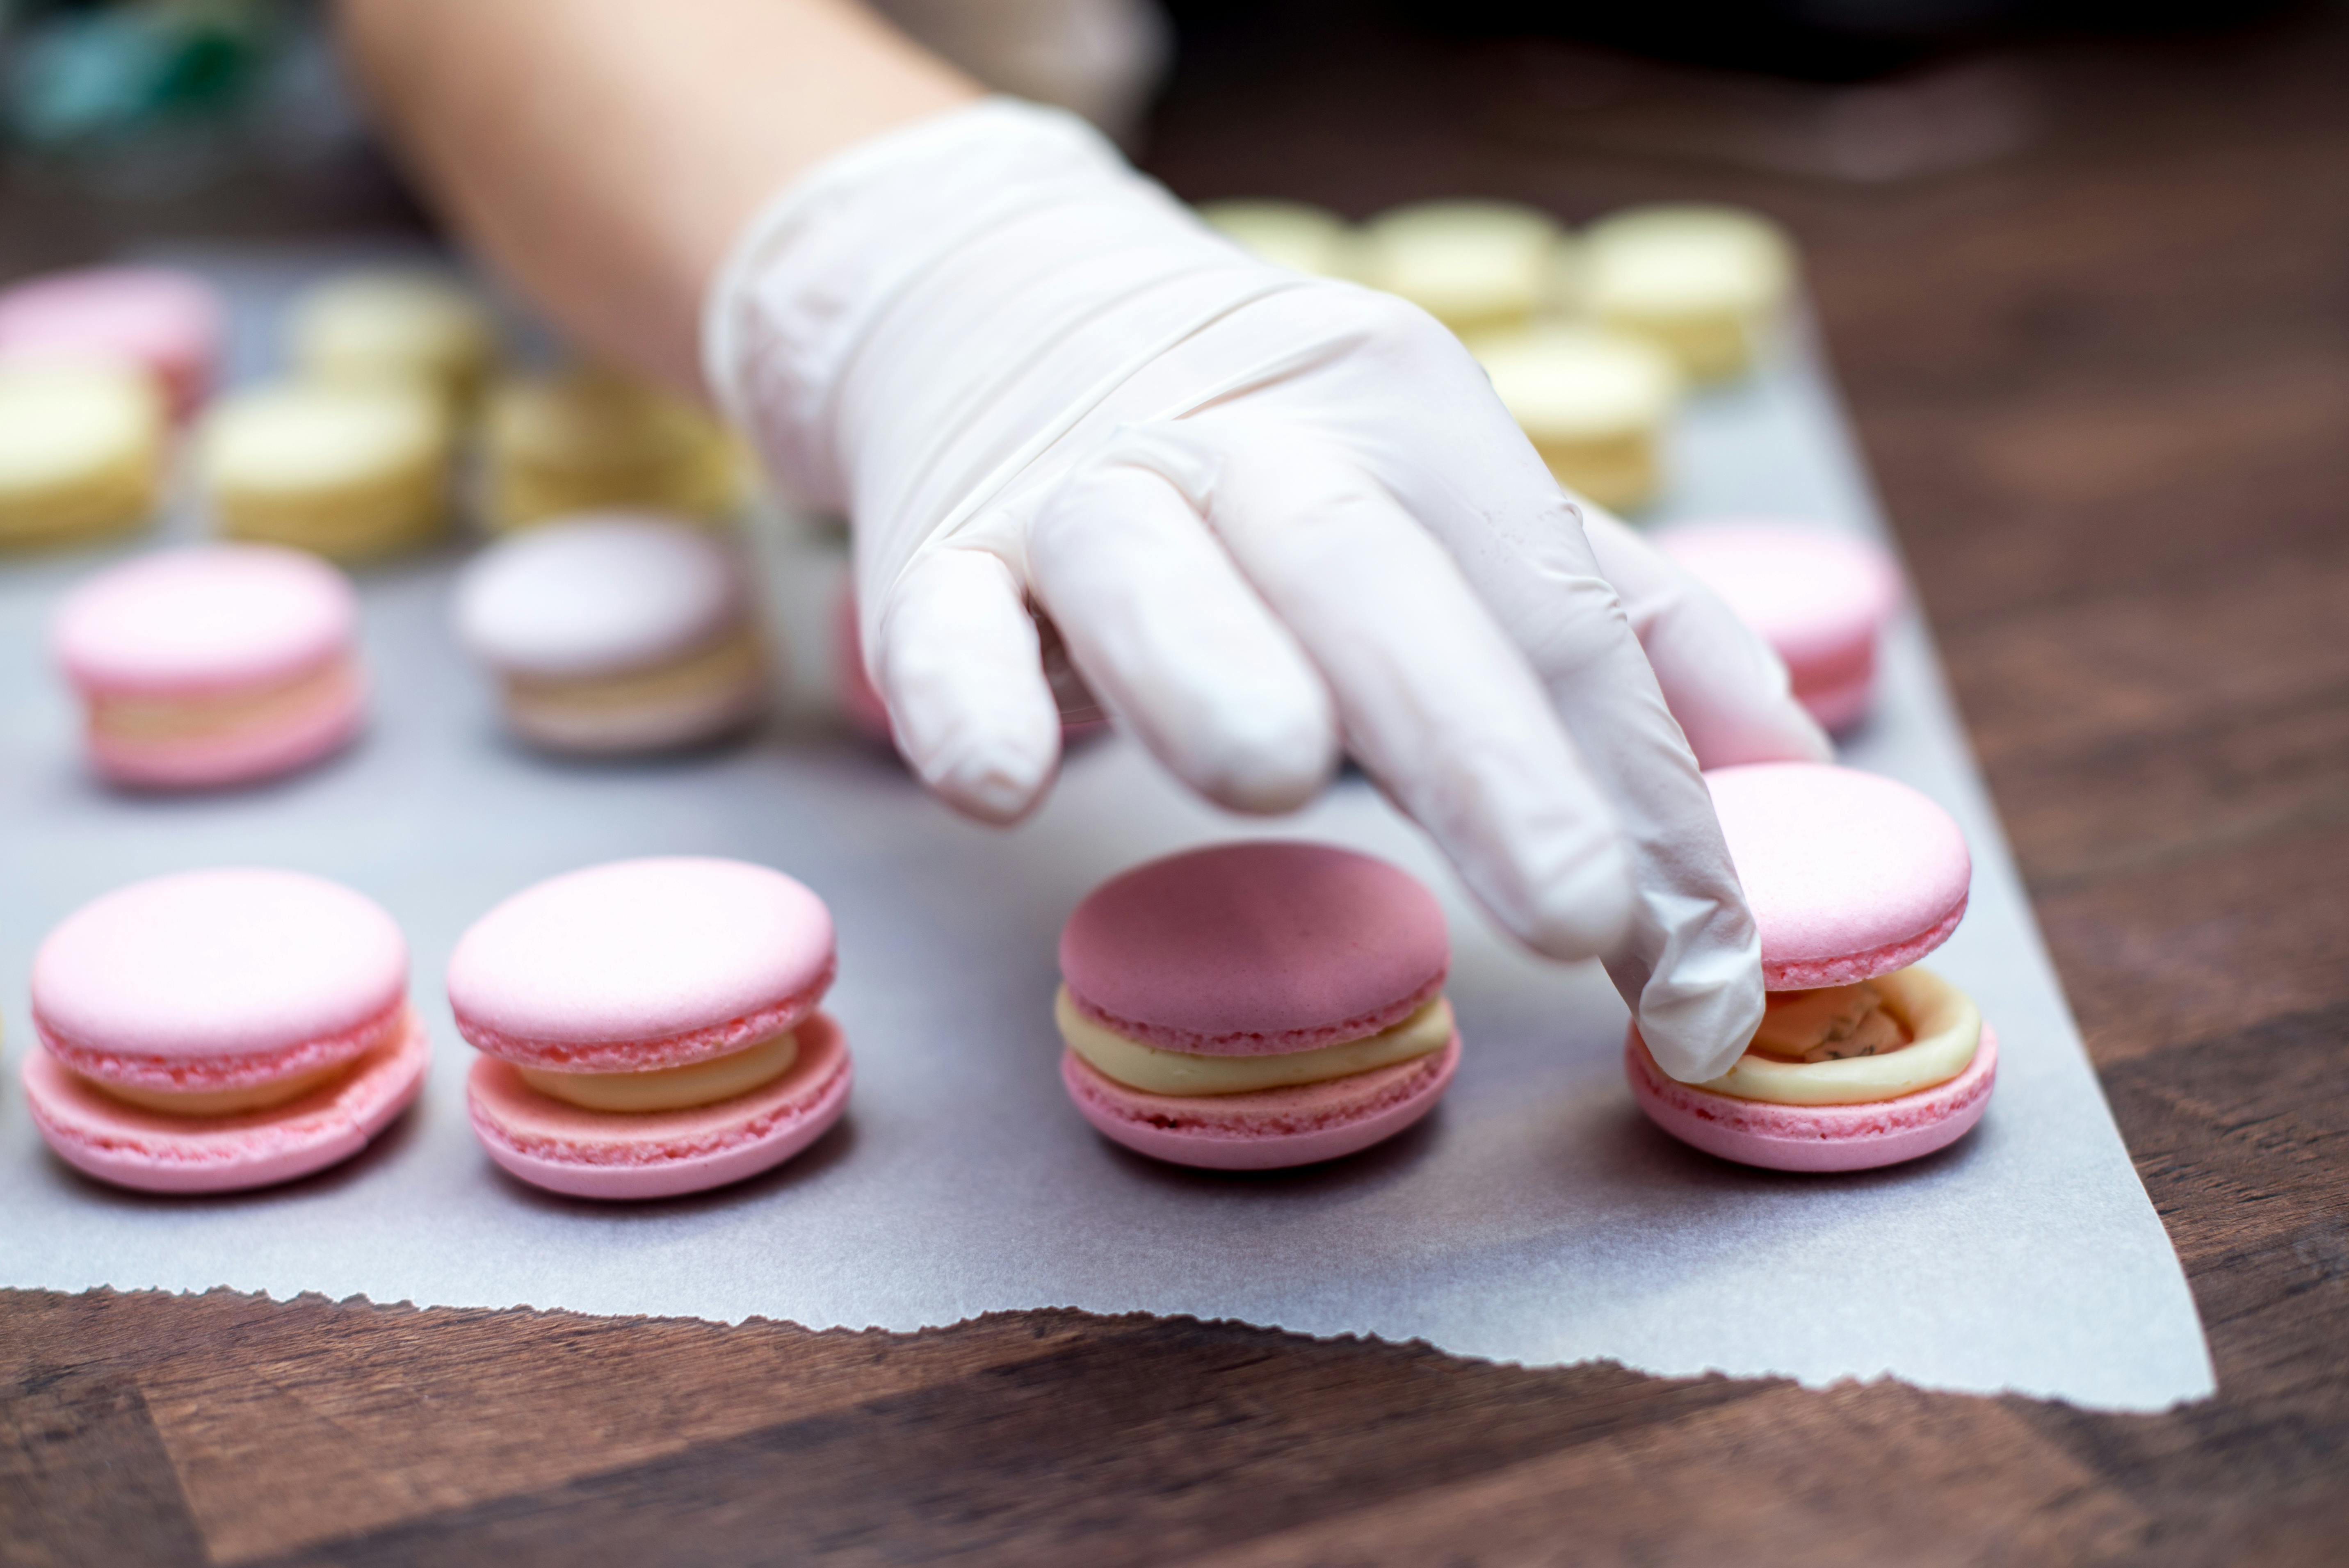 Macaron-bakles met een Parijse chef